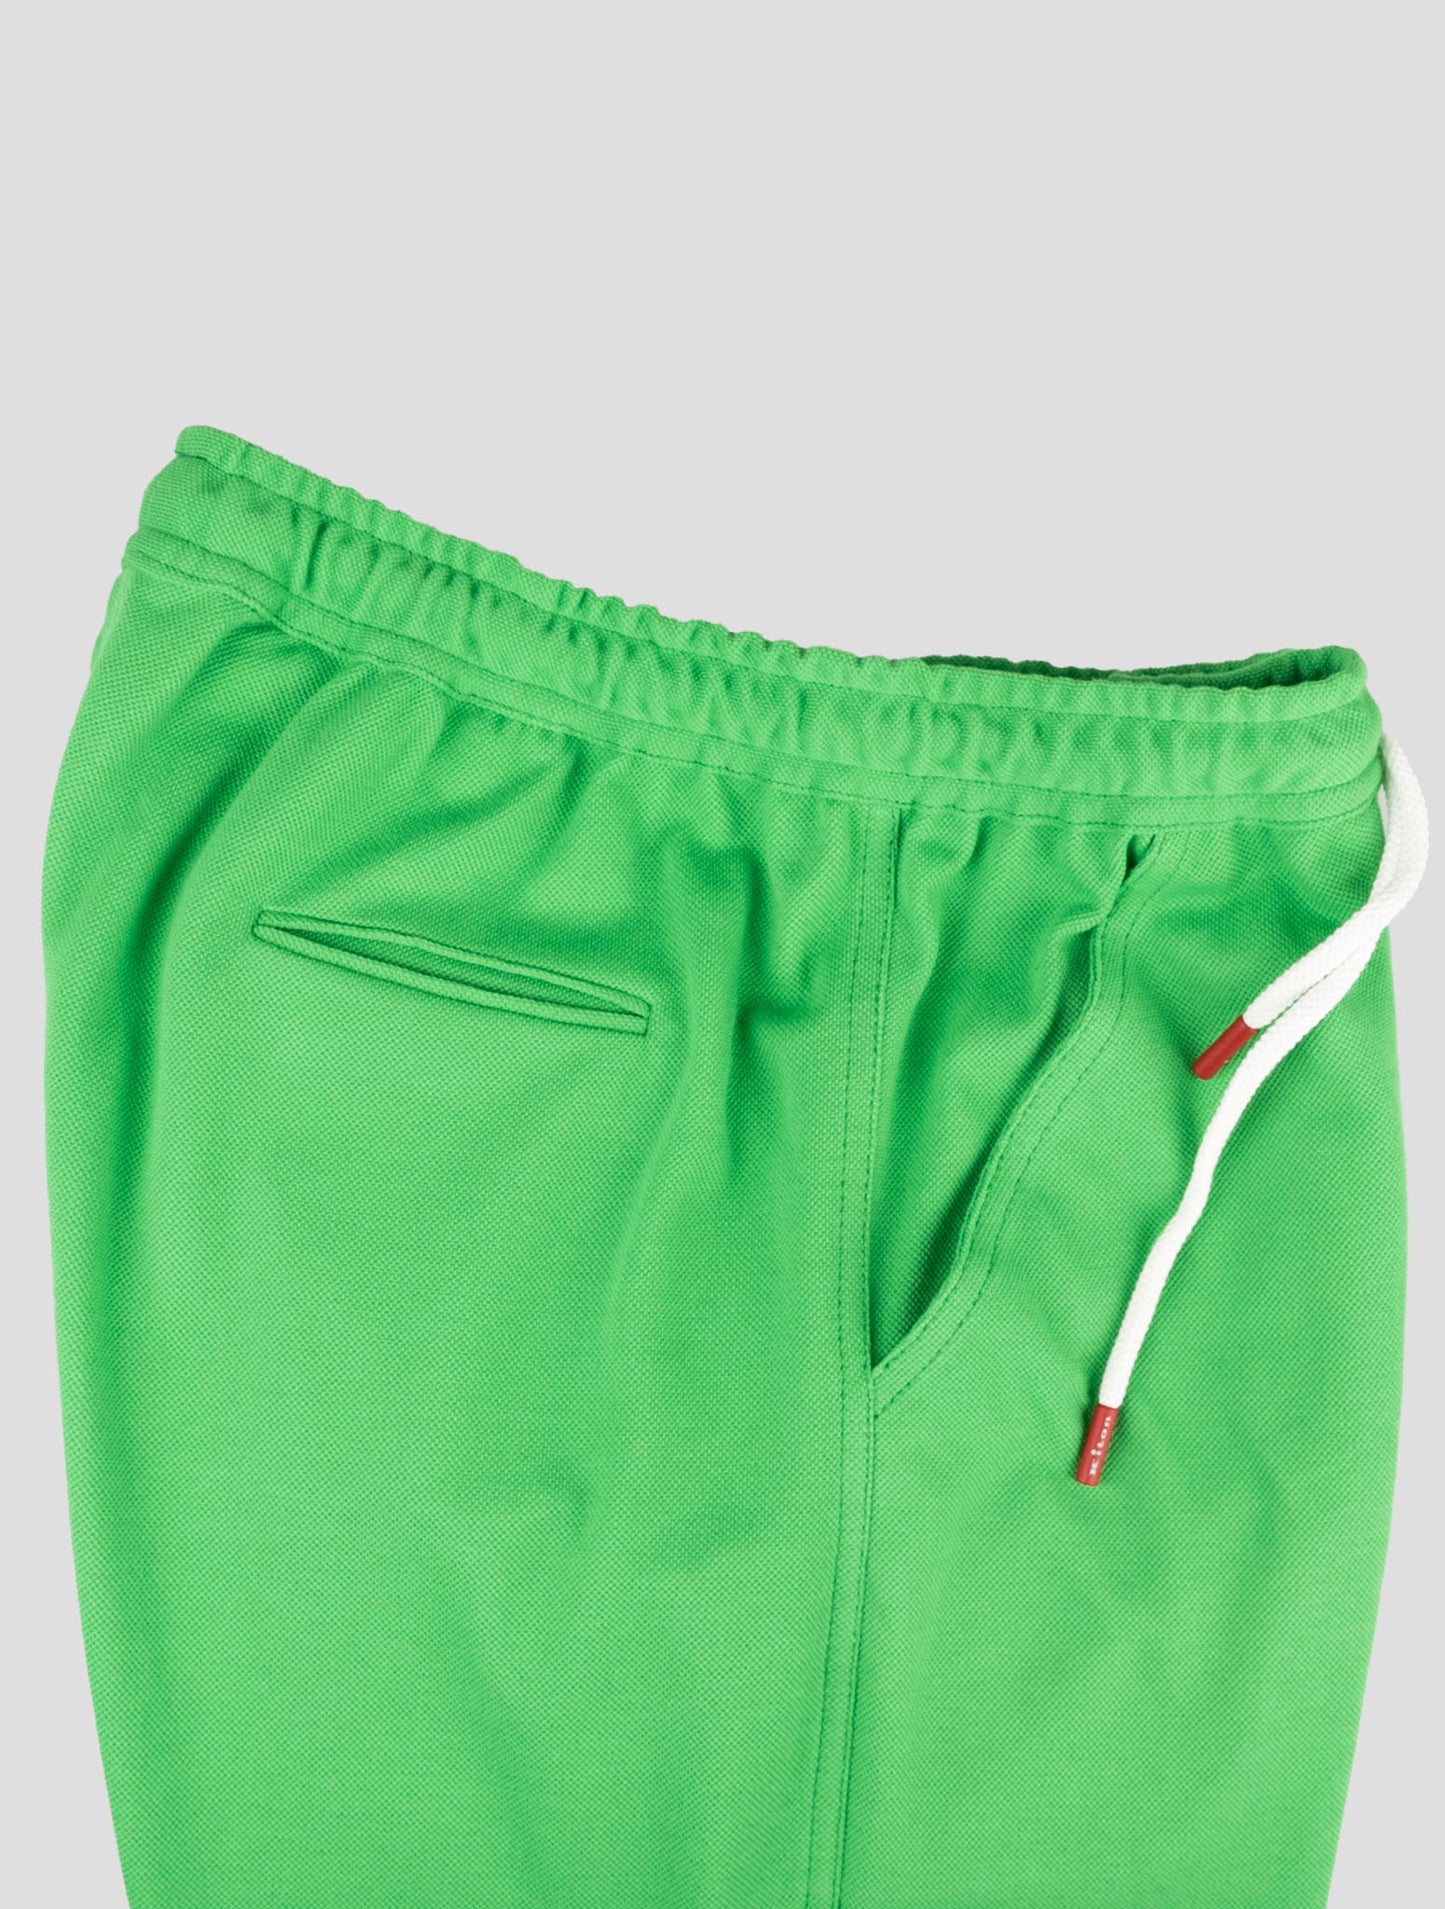 Kiton odgovarajuća odjeća - plava Mariano i zelena trenirka kratke hlače